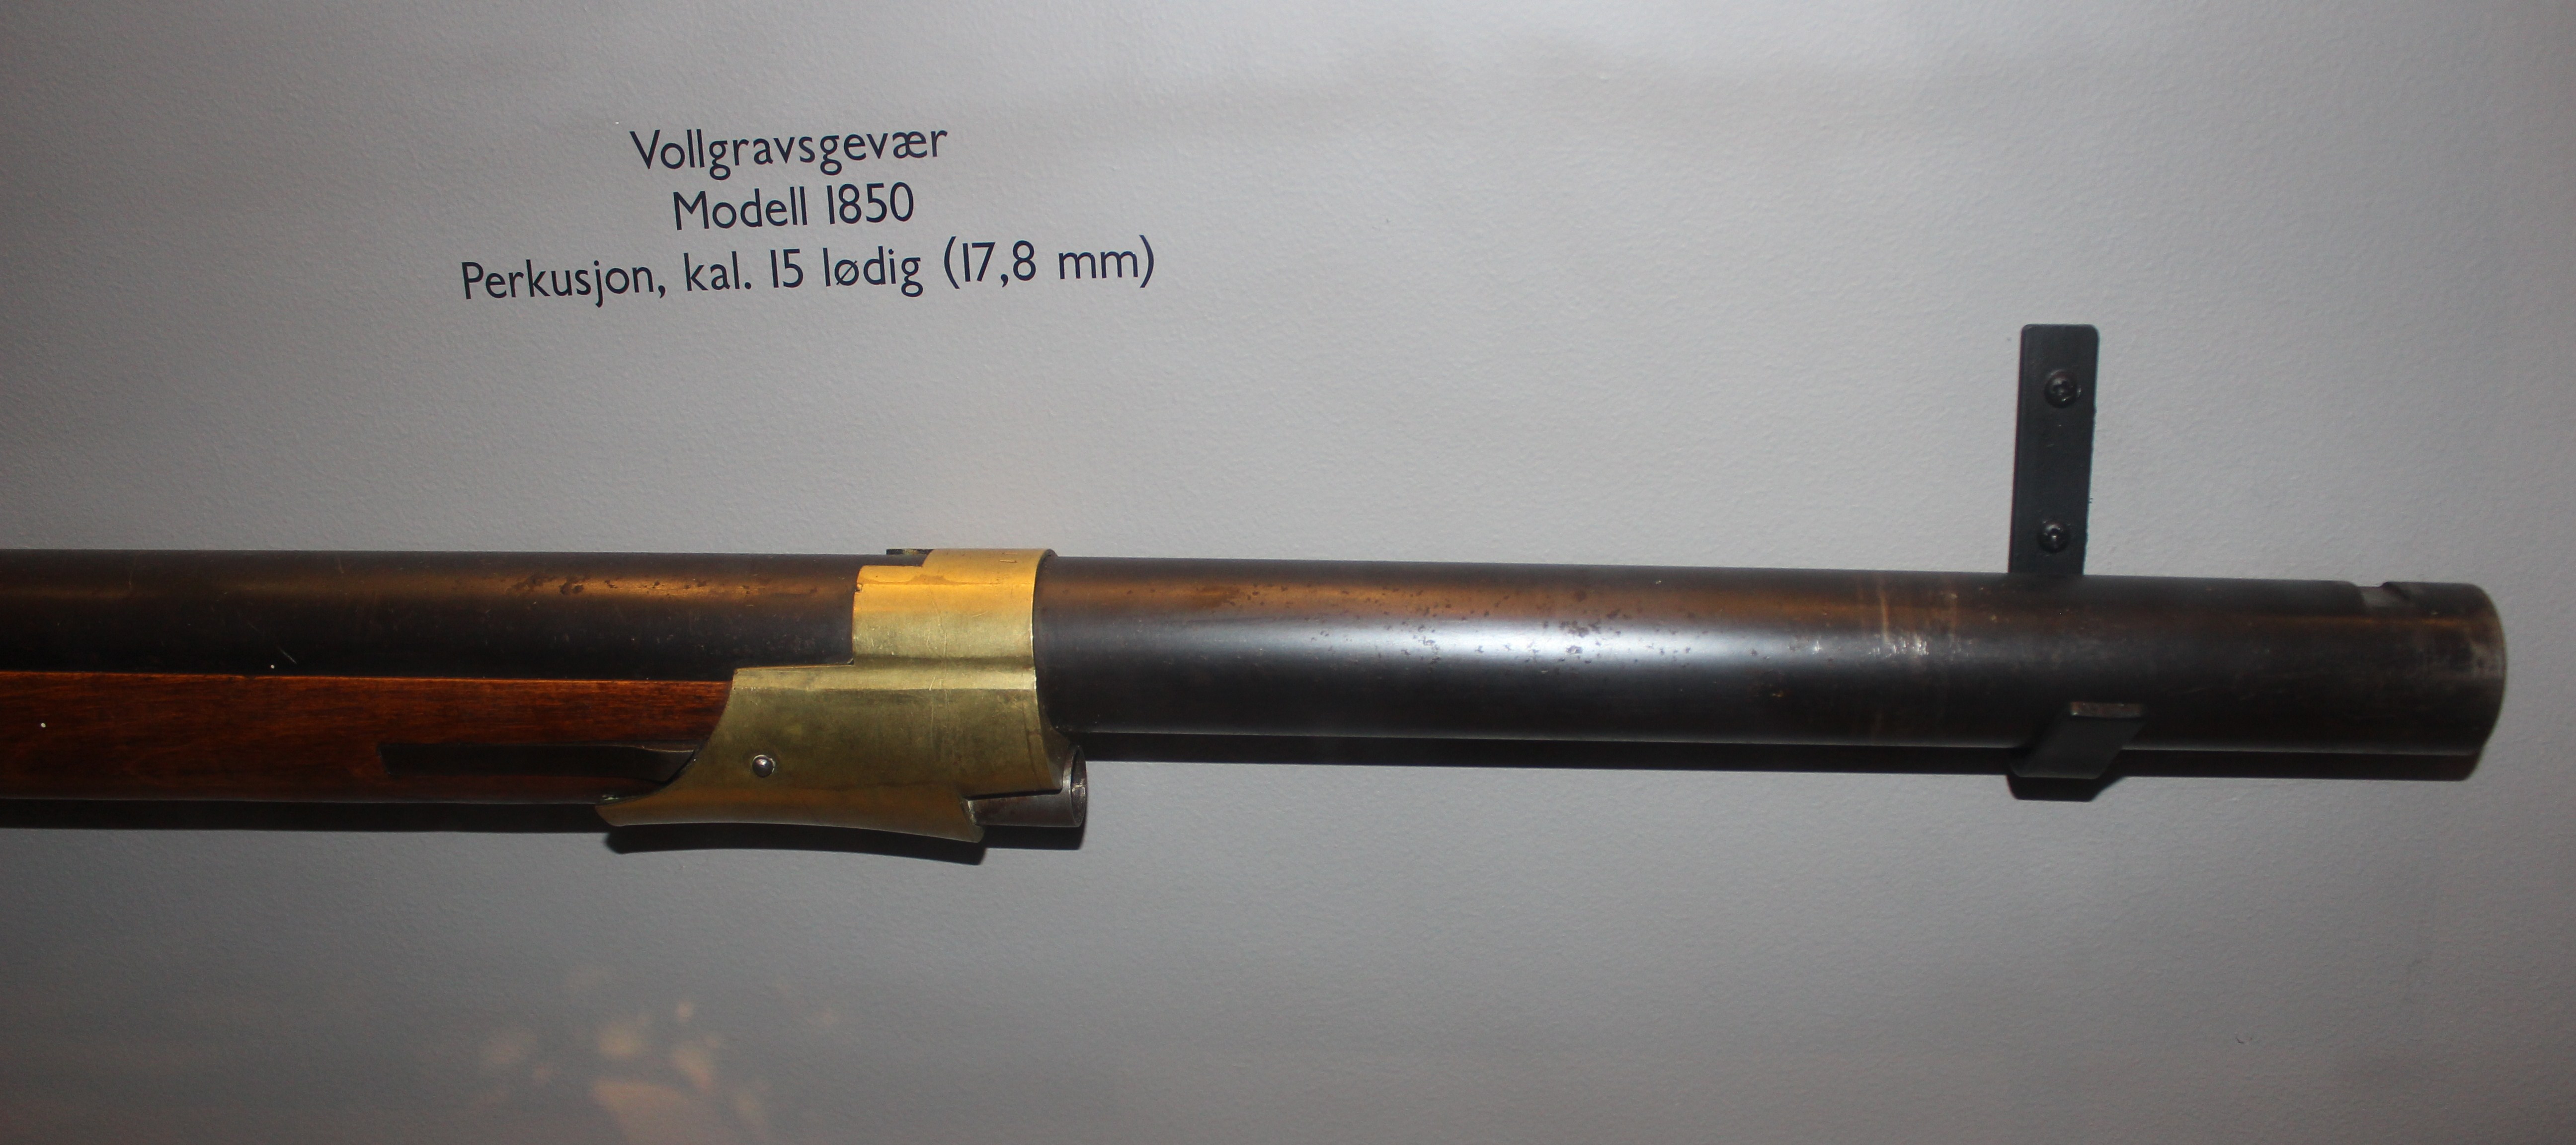 ./guns/rifle/bilder/Rifle-Kongsberg-Perkusjon-Vollgrav-M1850-4-6.JPG